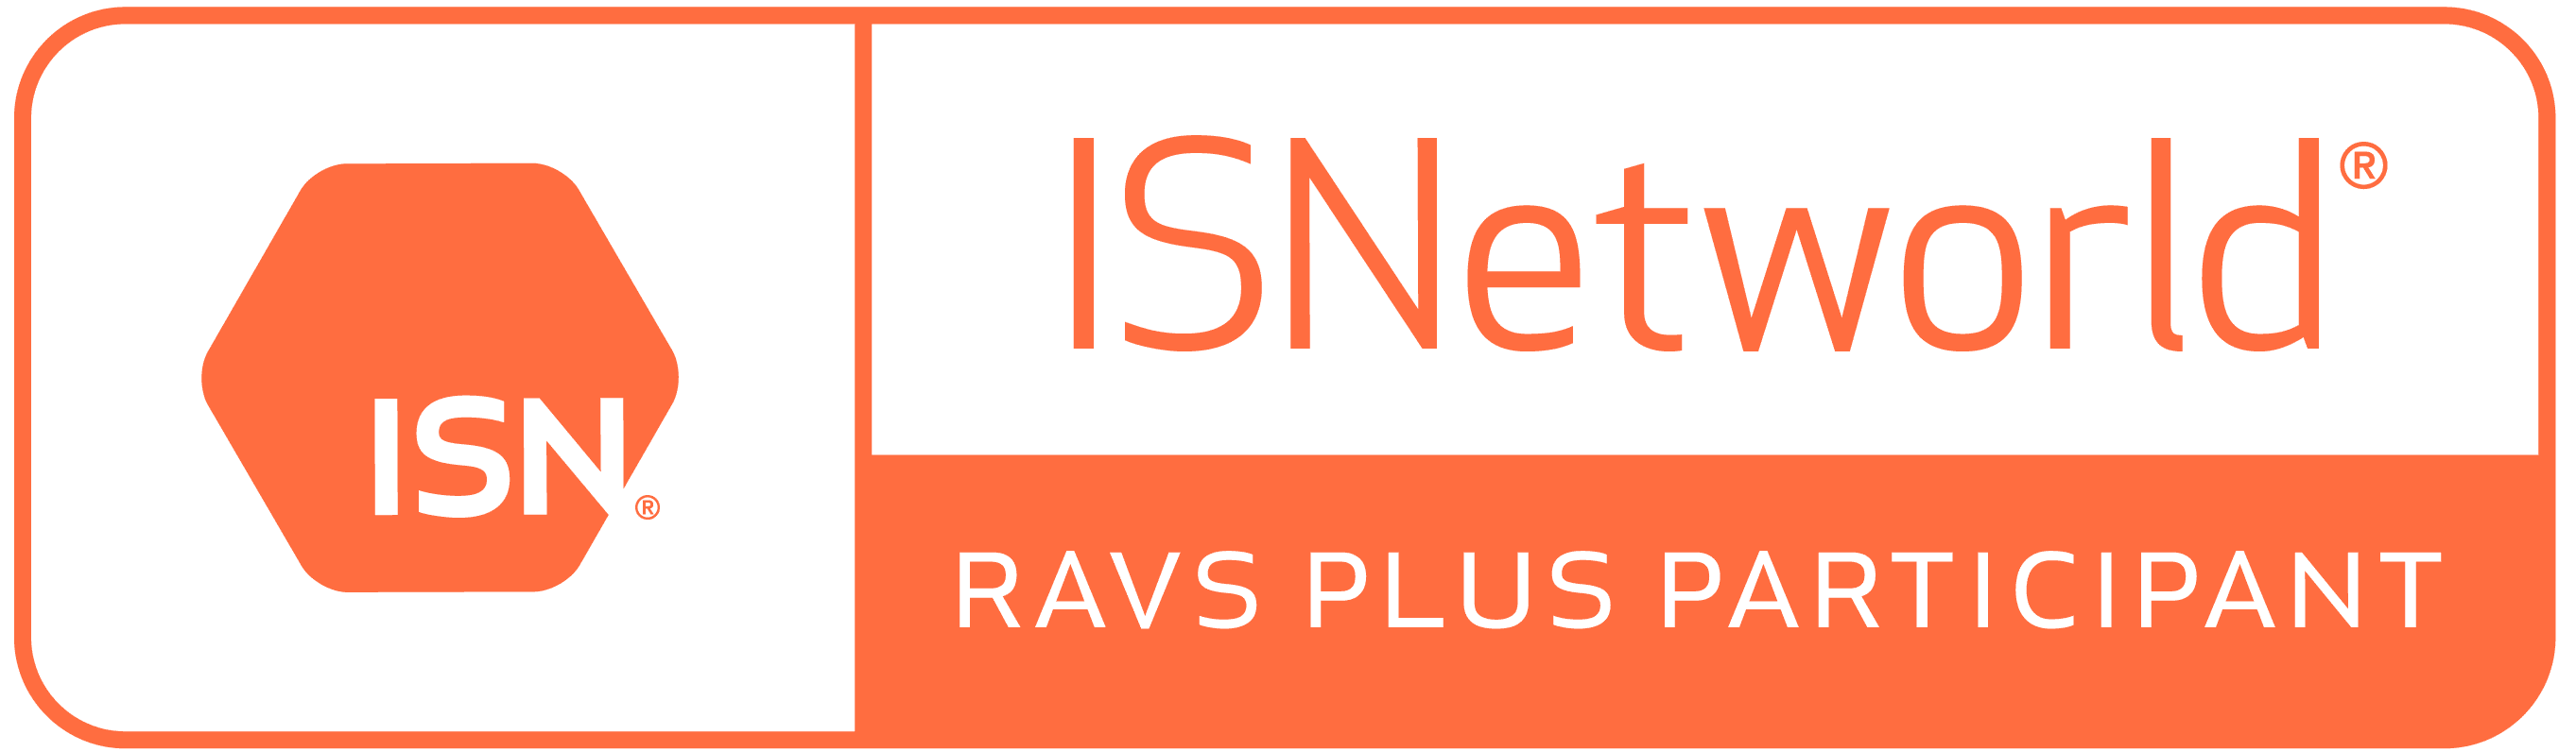 ISN RAVS Plus Participant - MurfTech